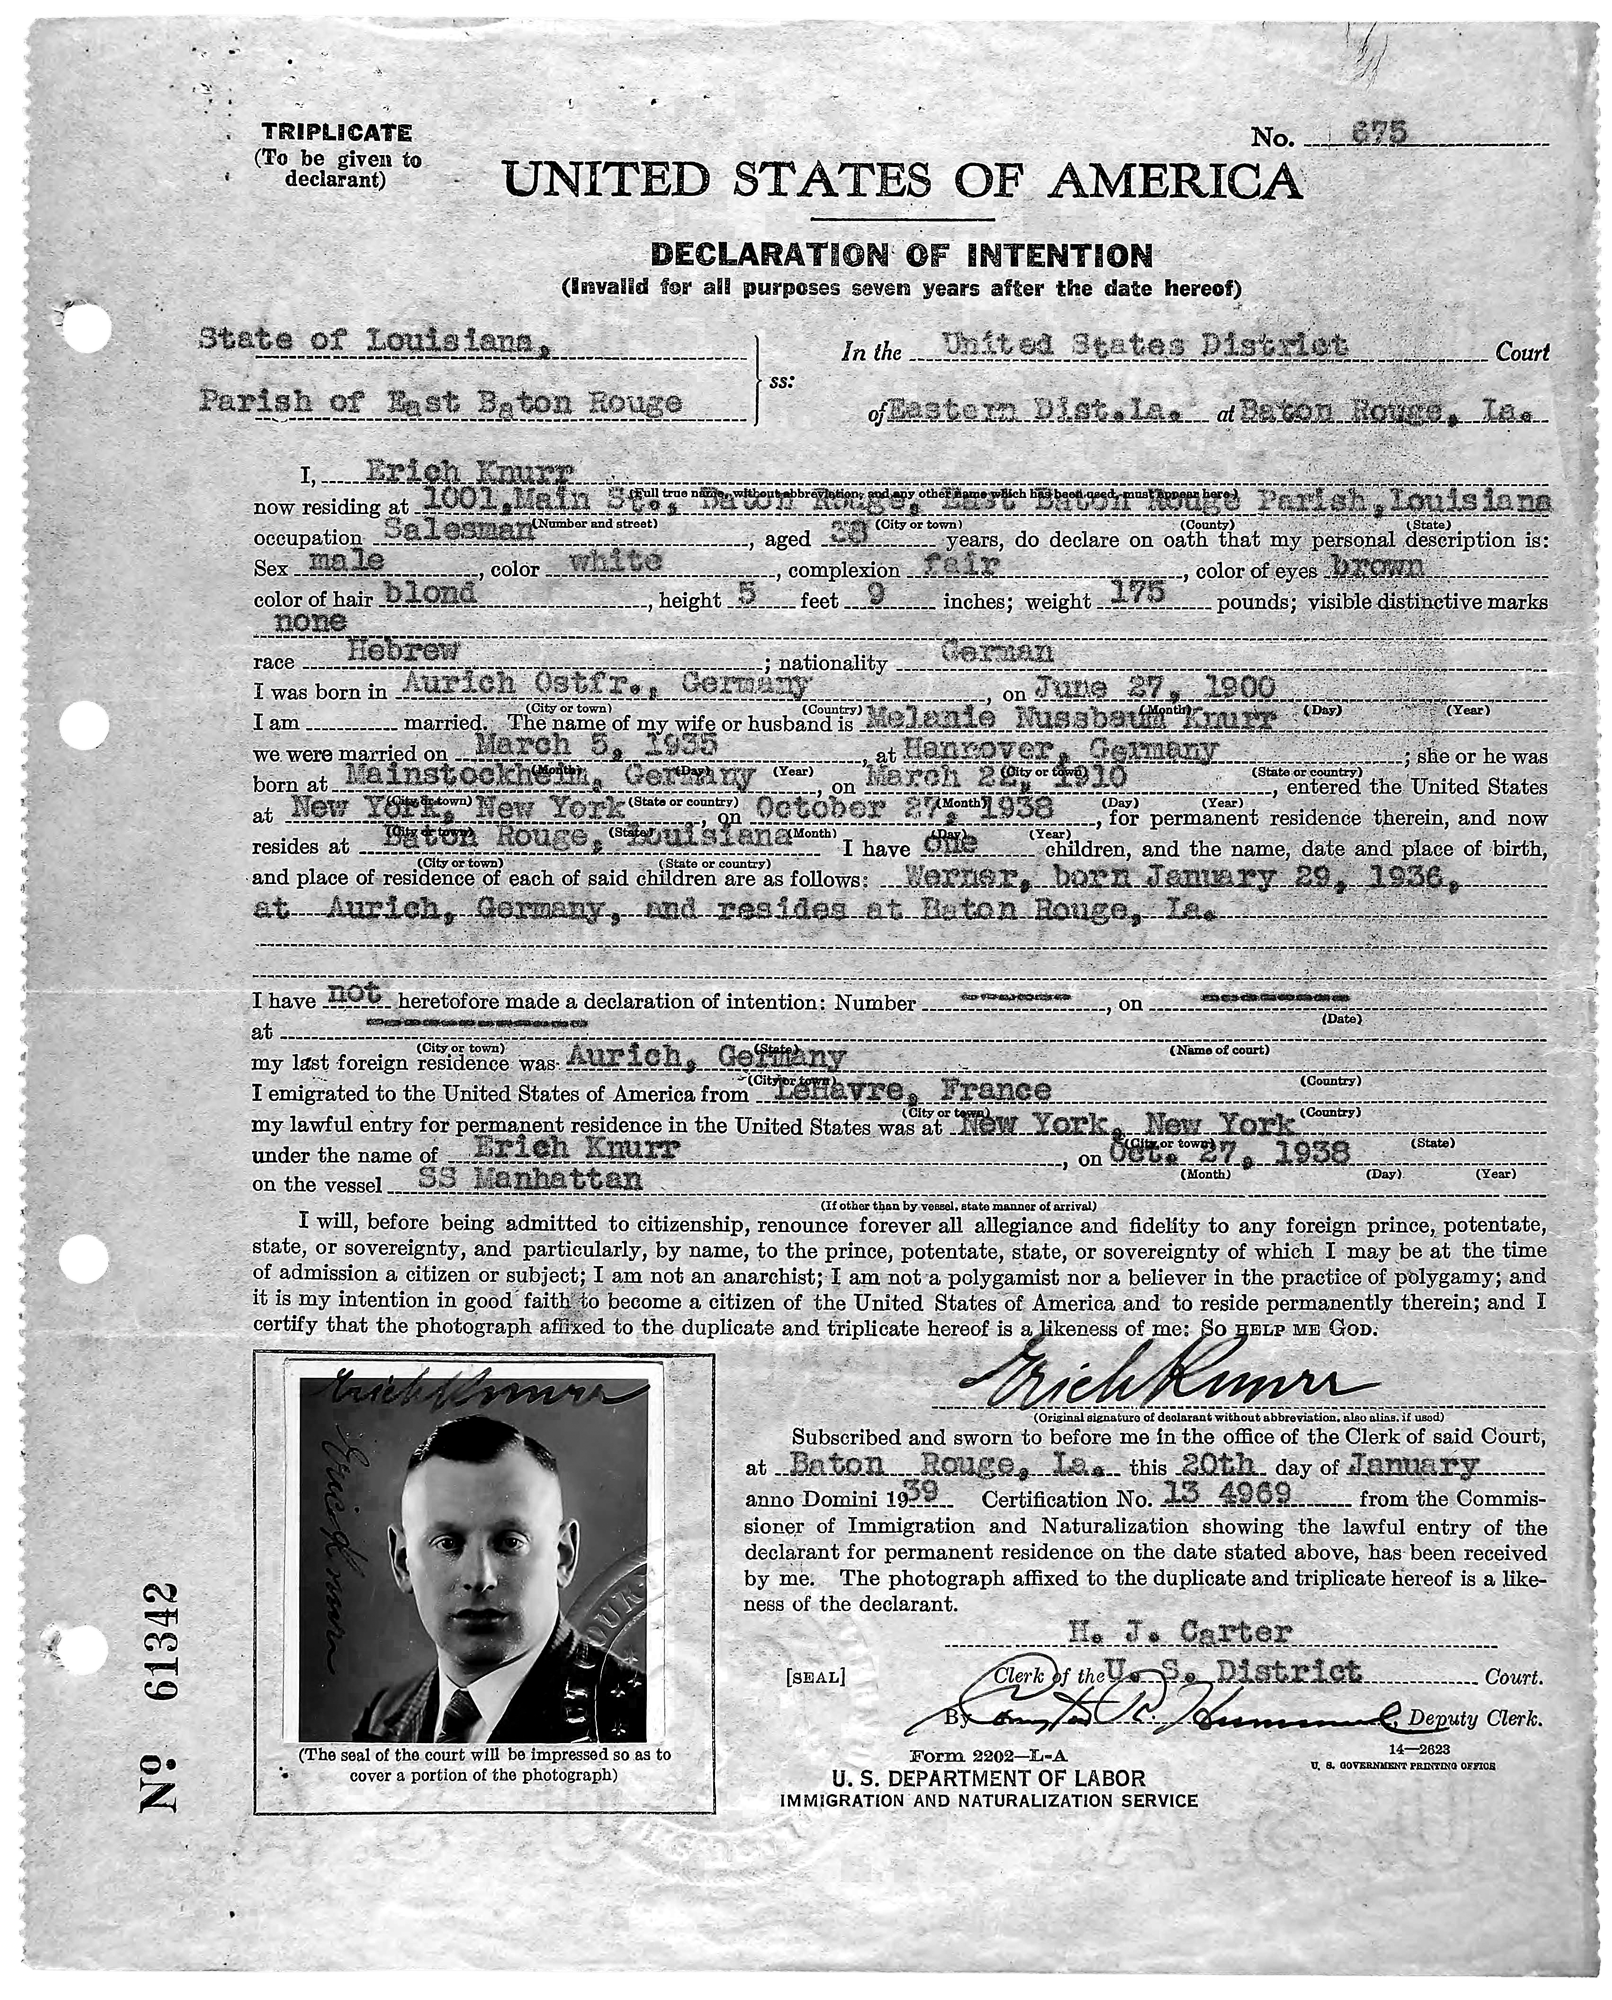 Einbürgerungsantrag von Erich Knurr aus dem Jahre 1939